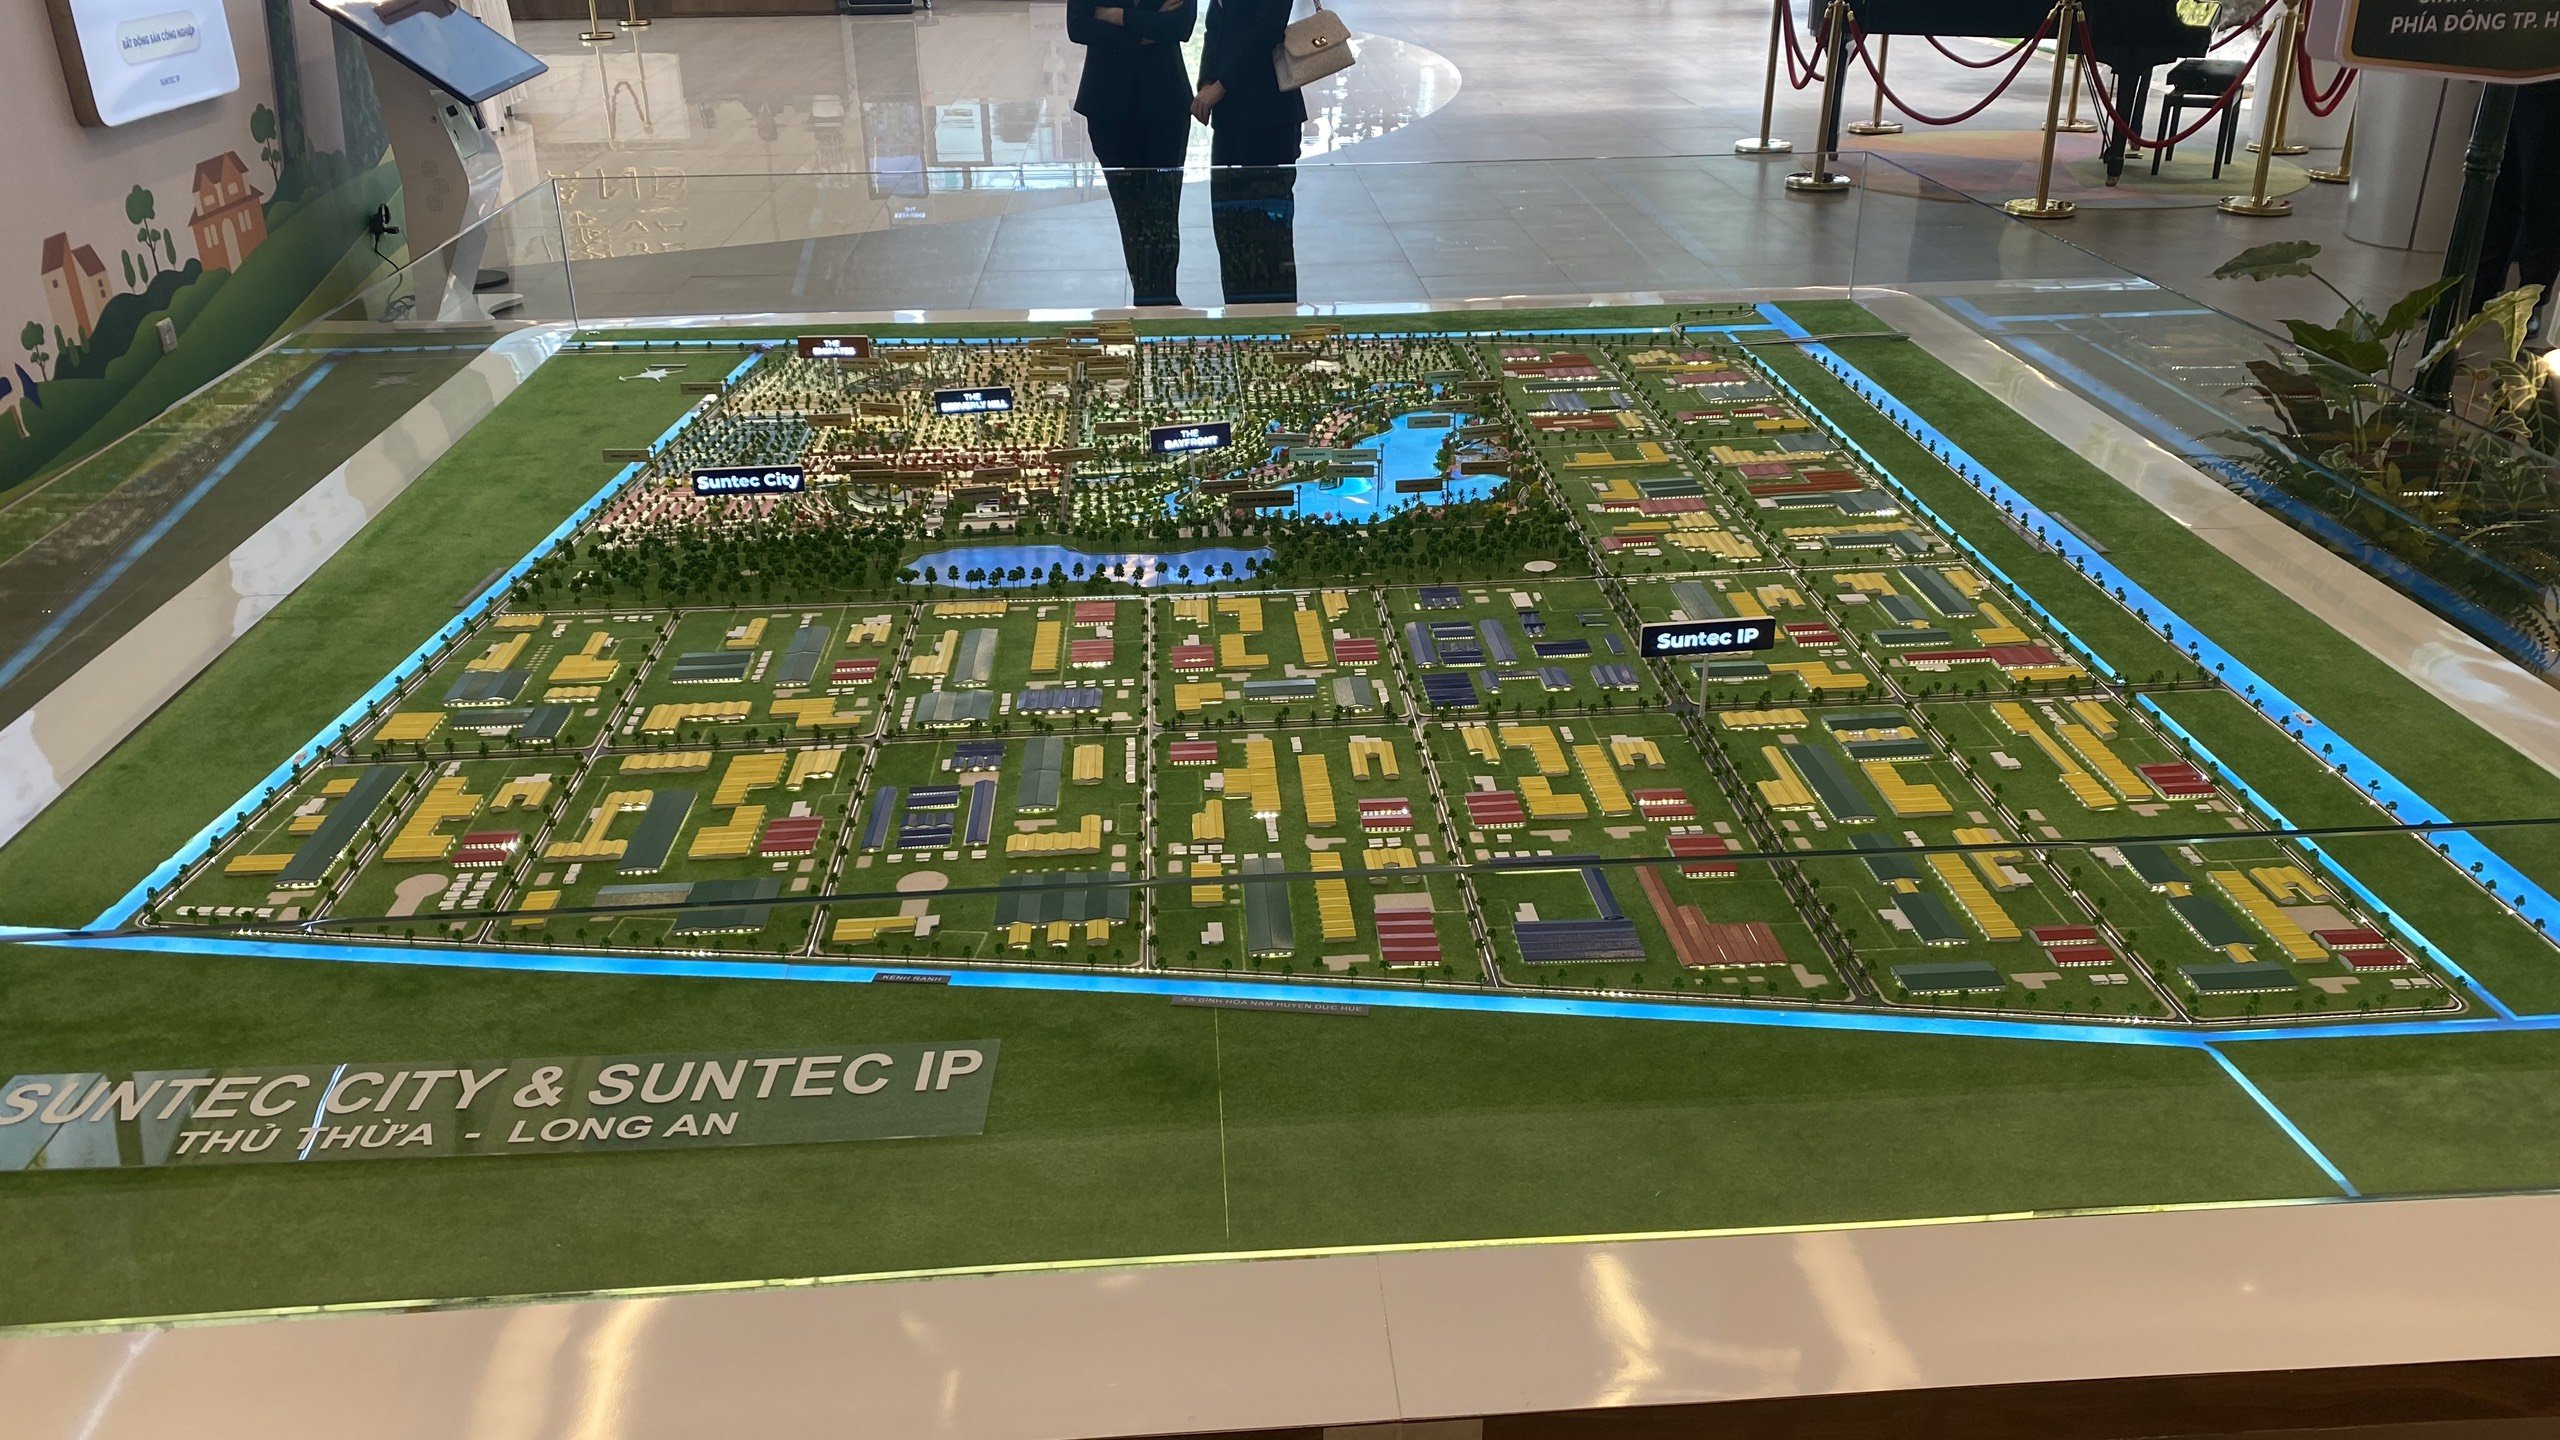 Bán đất Suntec City Novaland Thủ Thừa Long An - suất nội bộ công ty 6